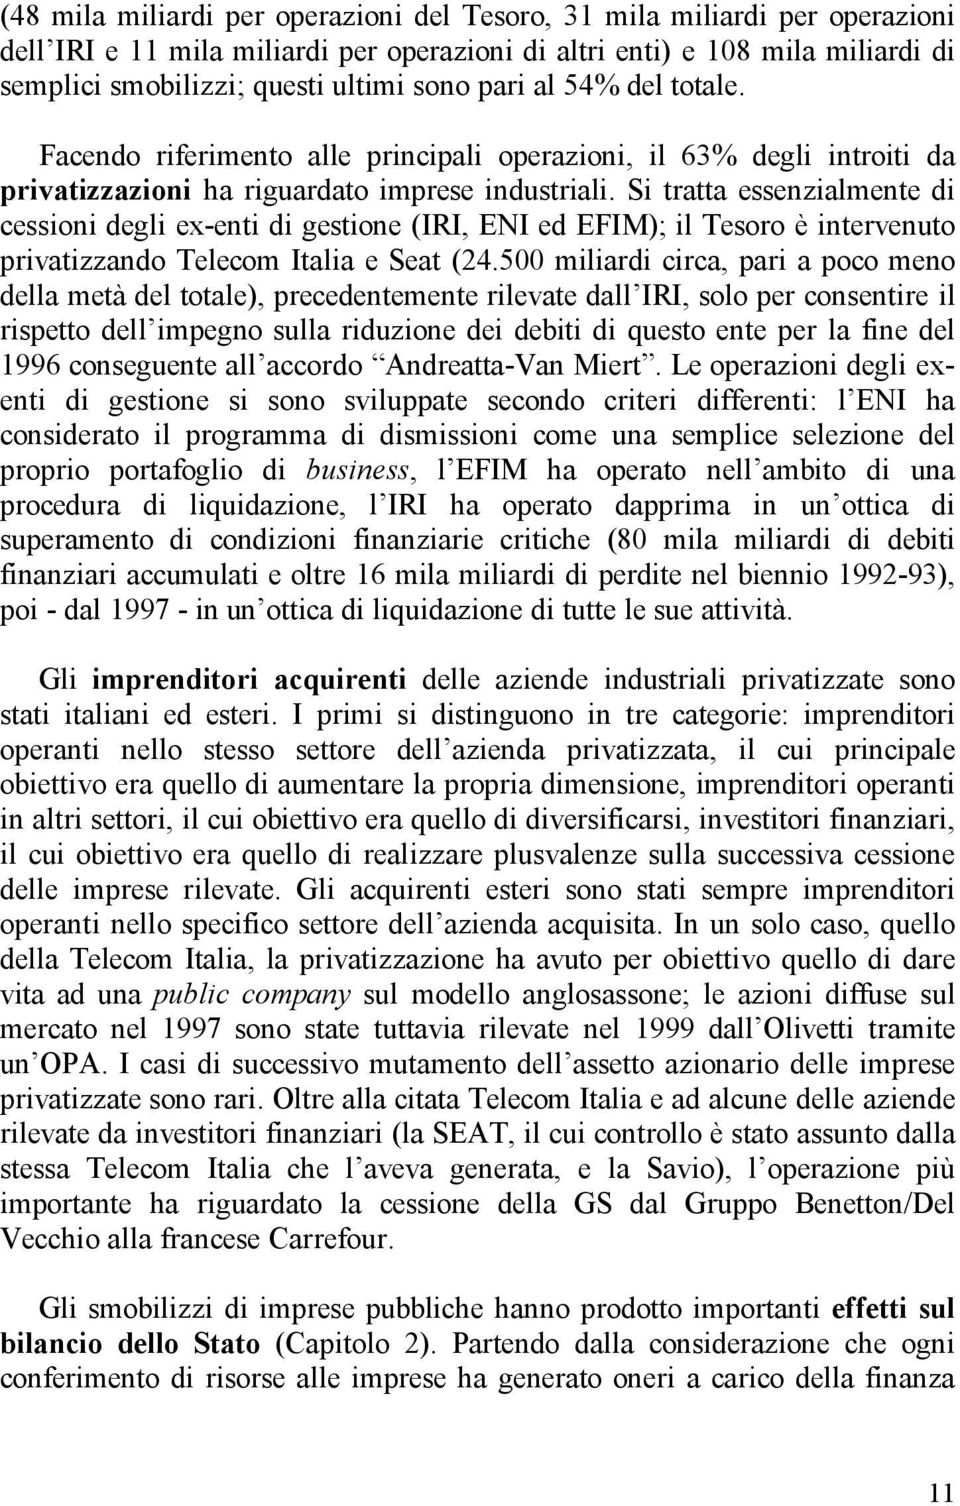 Si tratta essenzialmente di cessioni degli ex-enti di gestione (IRI, ENI ed EFIM); il Tesoro è intervenuto privatizzando Telecom Italia e Seat (24.